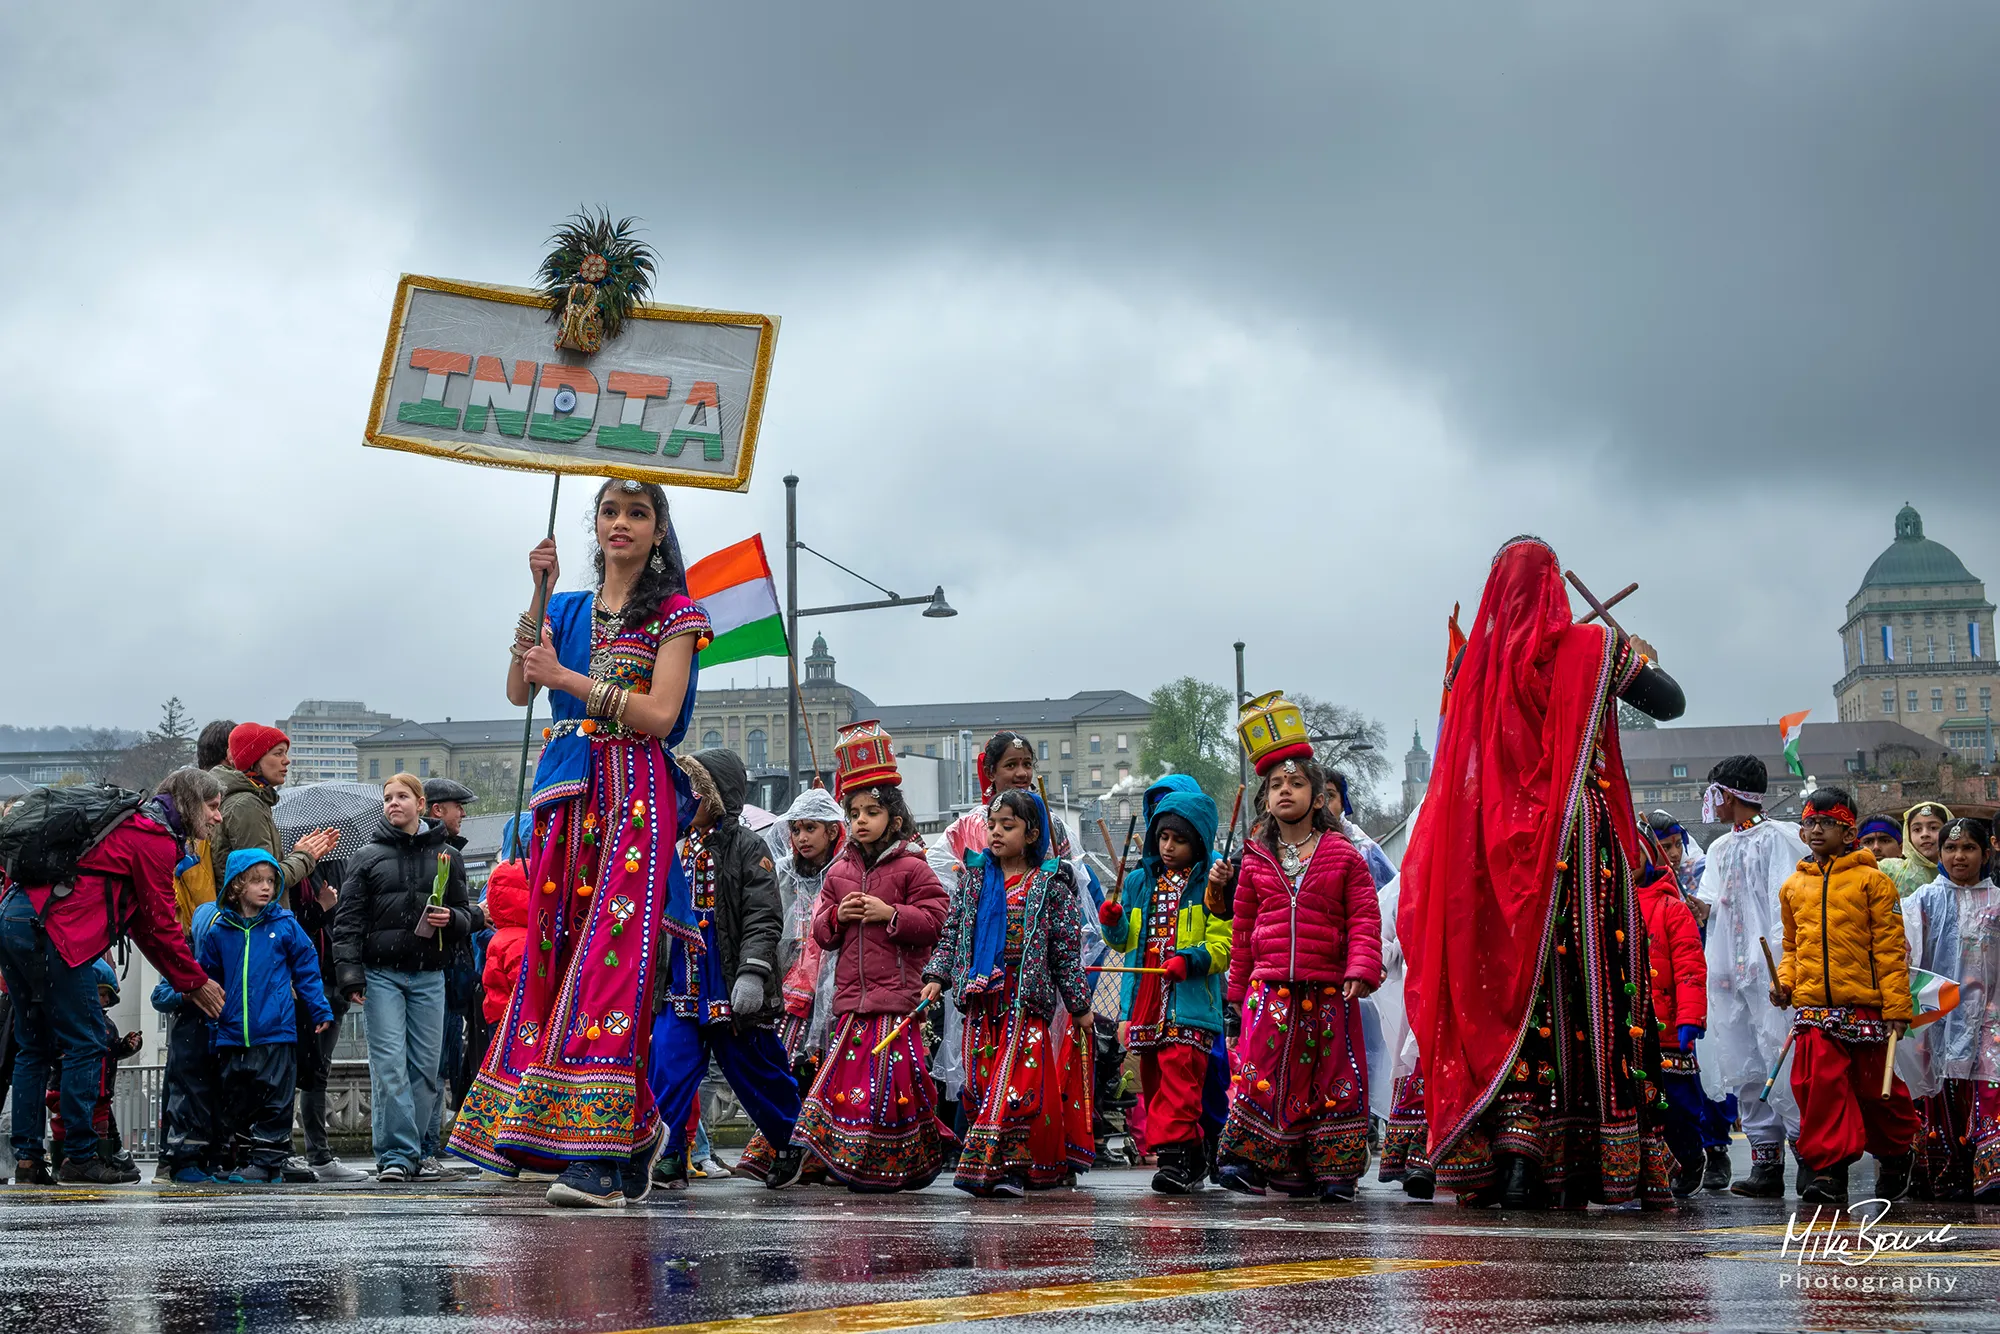 Colourful Indian women and children at Sechseläuten parade